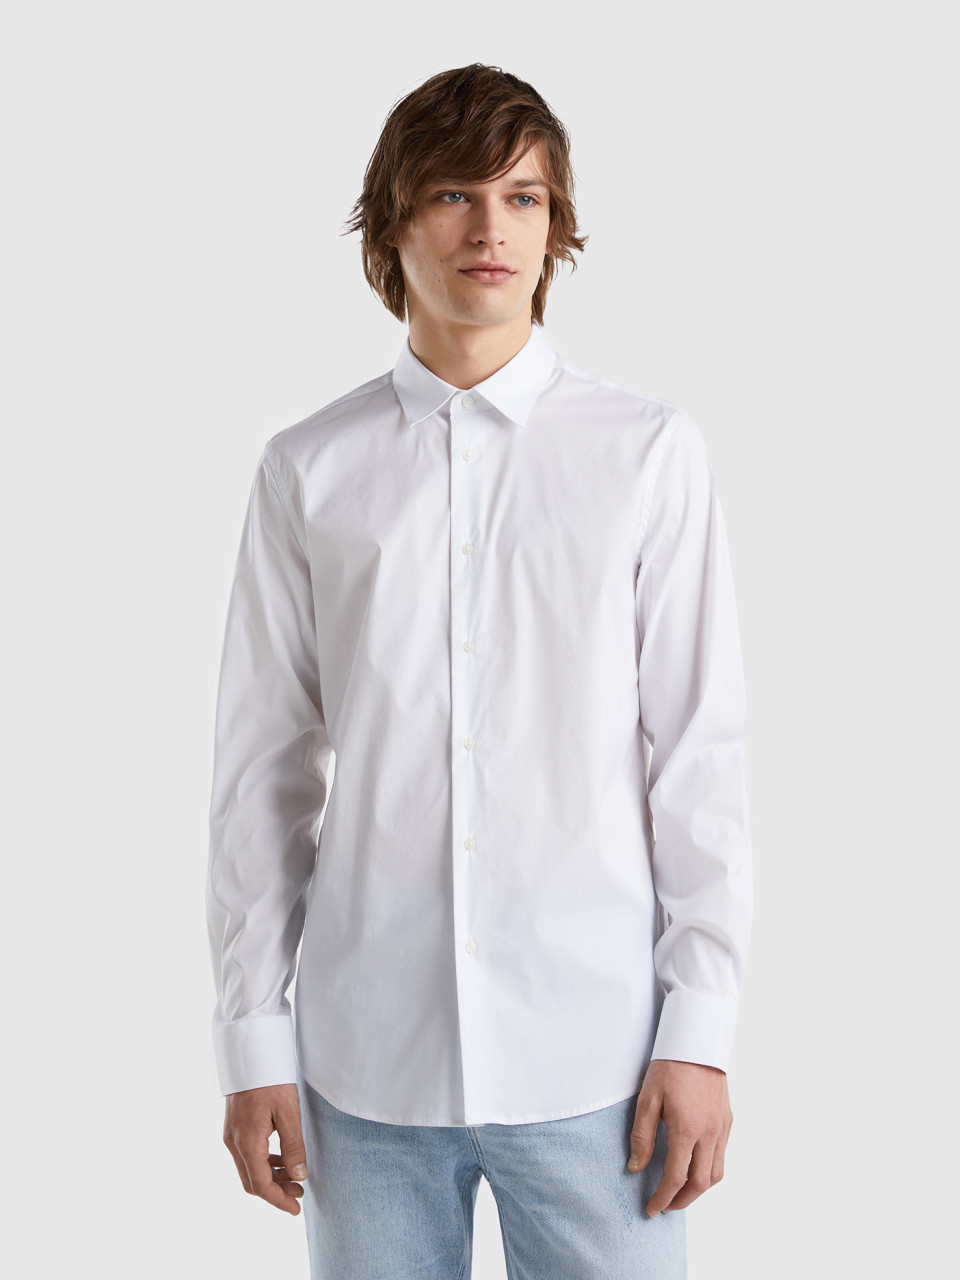 Benetton, Solid Color Slim Fit Shirt, White, Men